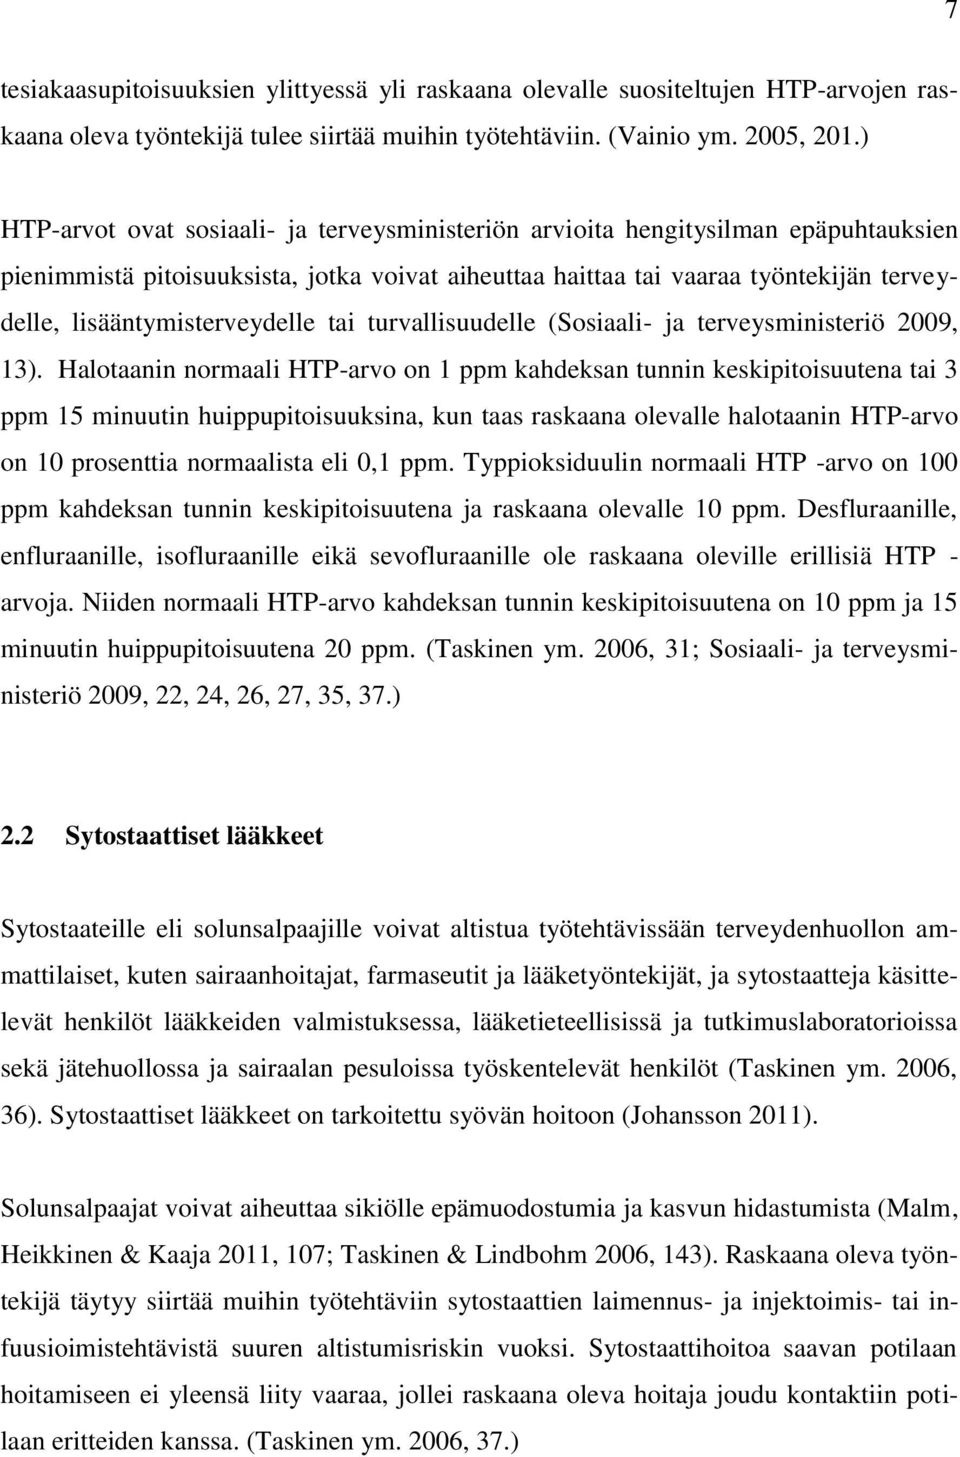 lisääntymisterveydelle tai turvallisuudelle (Sosiaali- ja terveysministeriö 2009, 13).